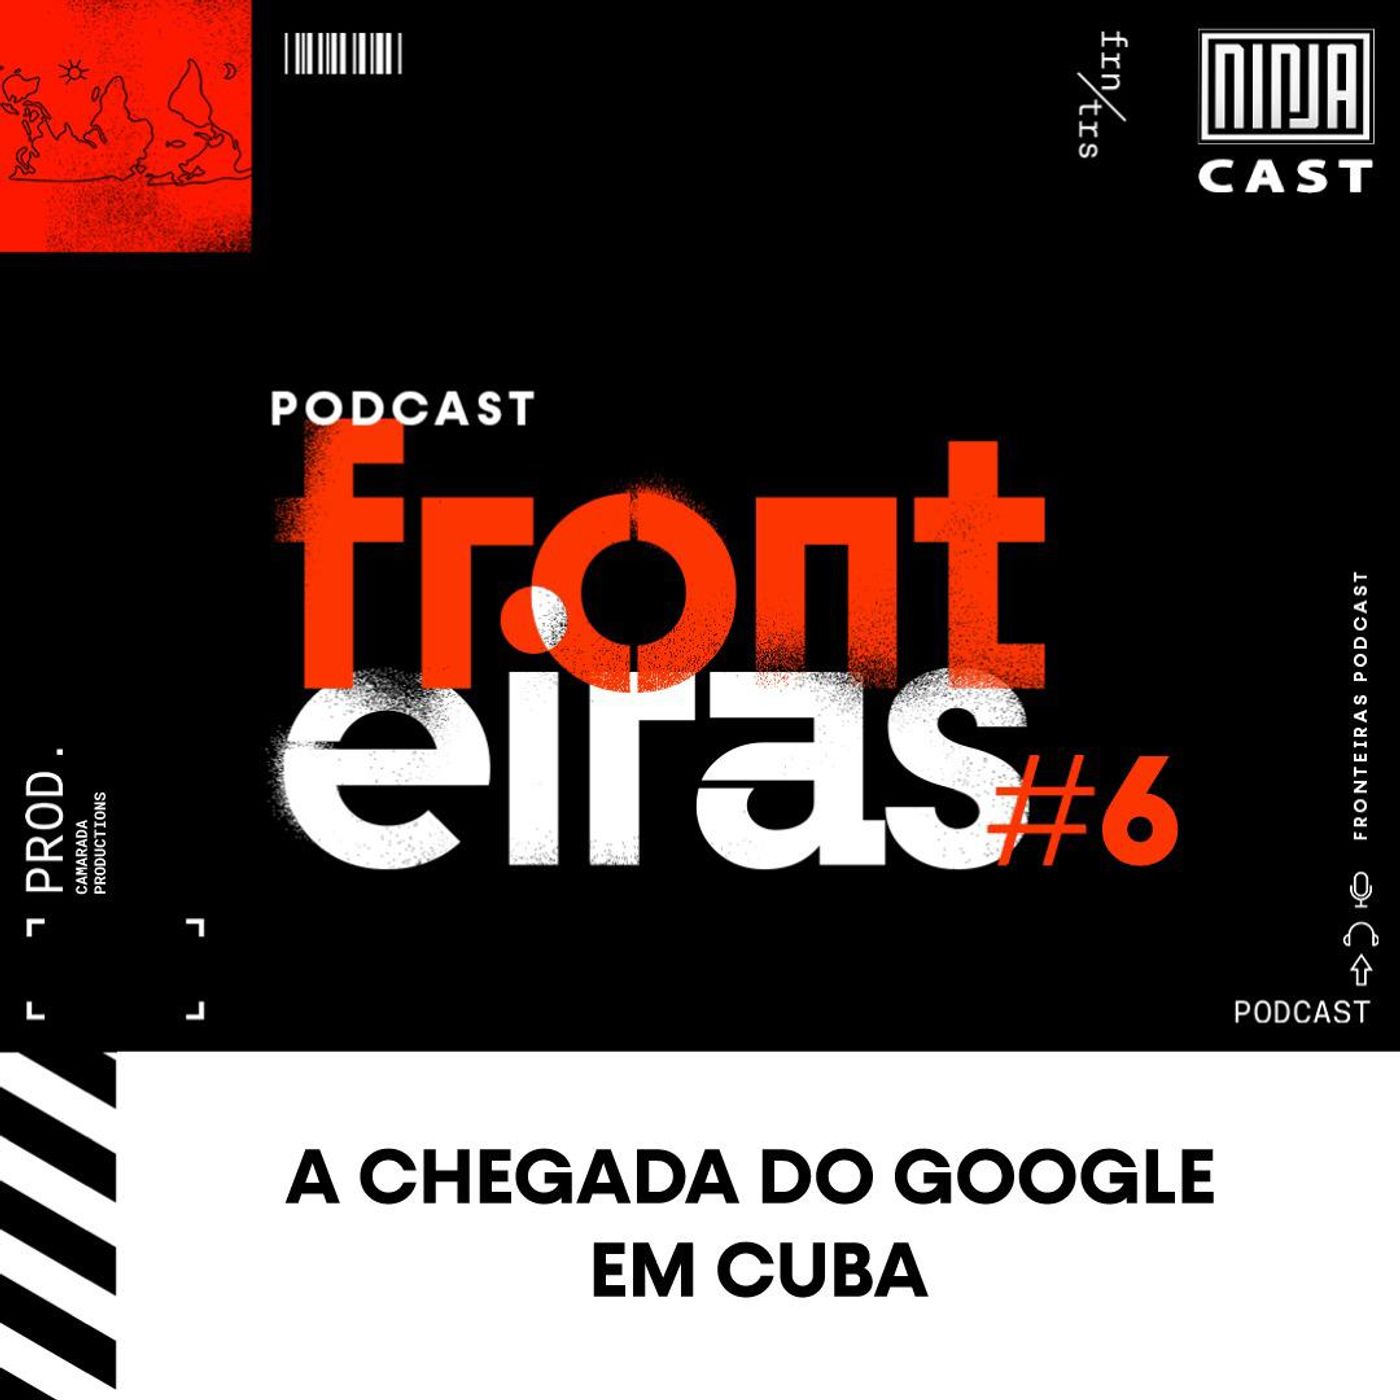 A chegada do Google em Cuba